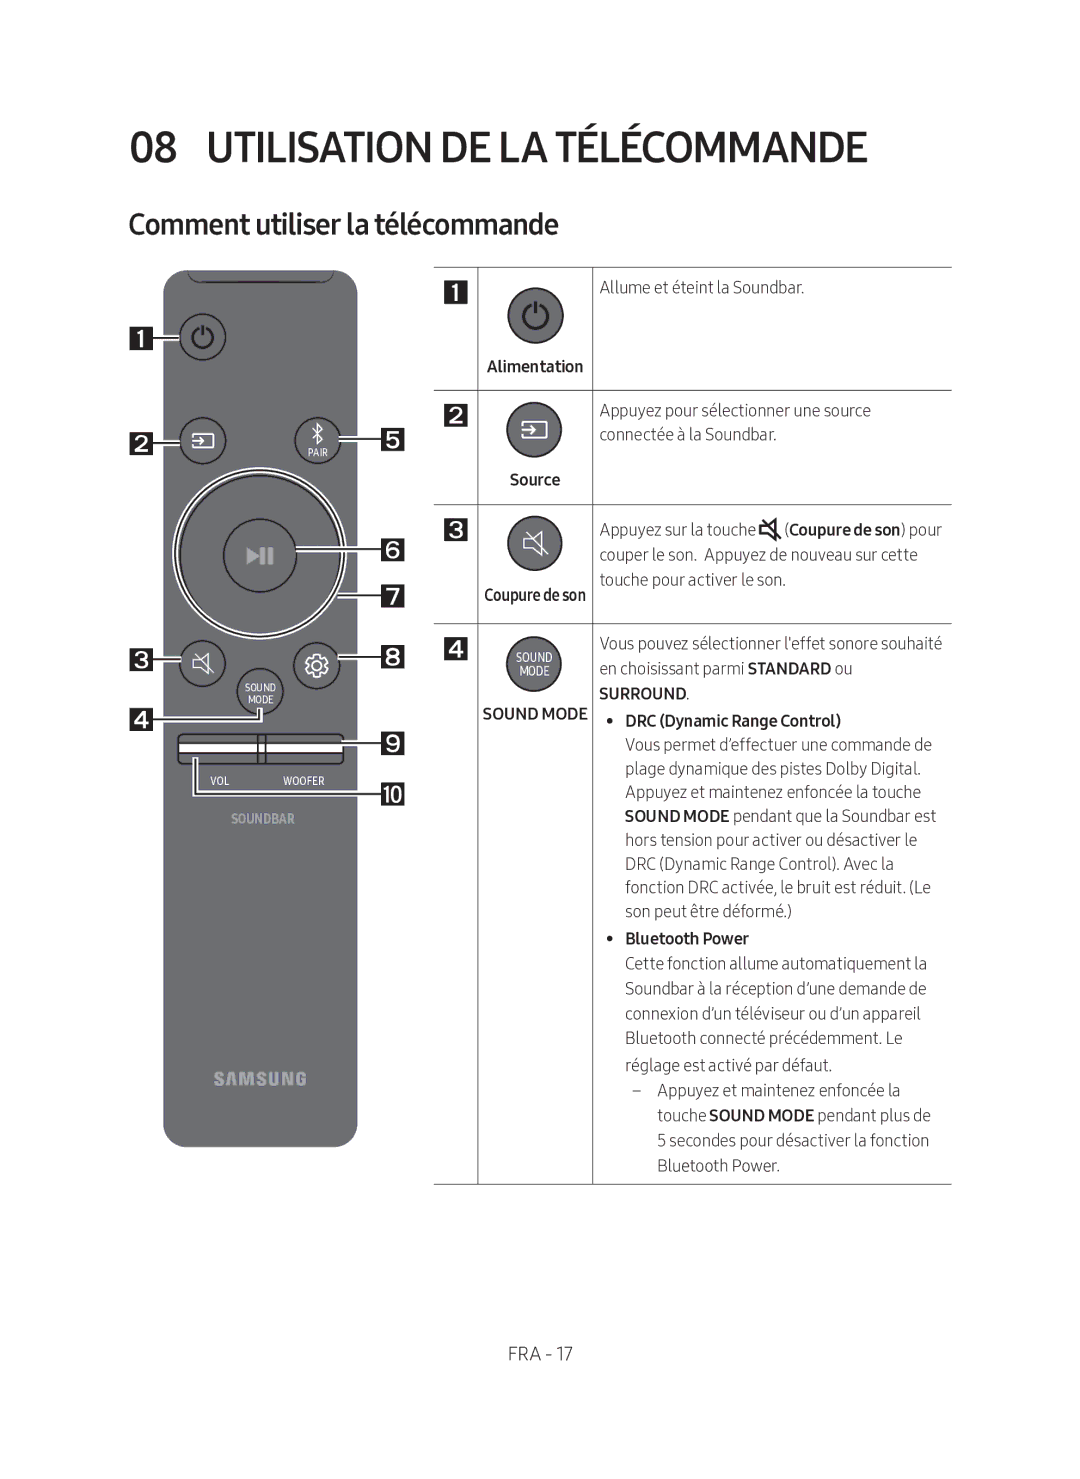 Samsung HW-N450/ZF manual Utilisation DE LA Télécommande, Comment utiliser la télécommande 